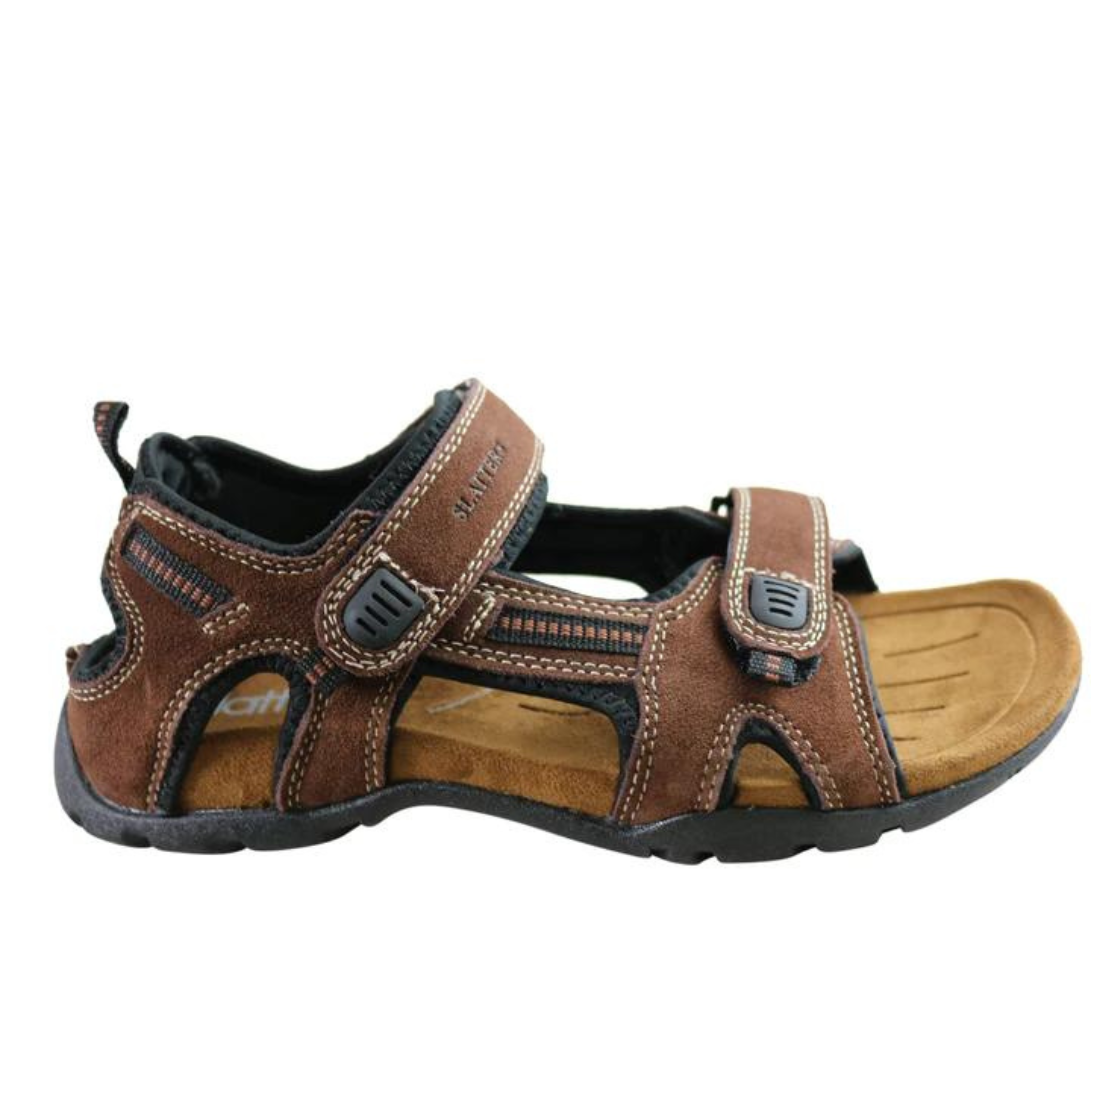 Slatters Broome II Sandal - Brown 7 Brown Mens Footwear by Slatters | The Bloke Shop